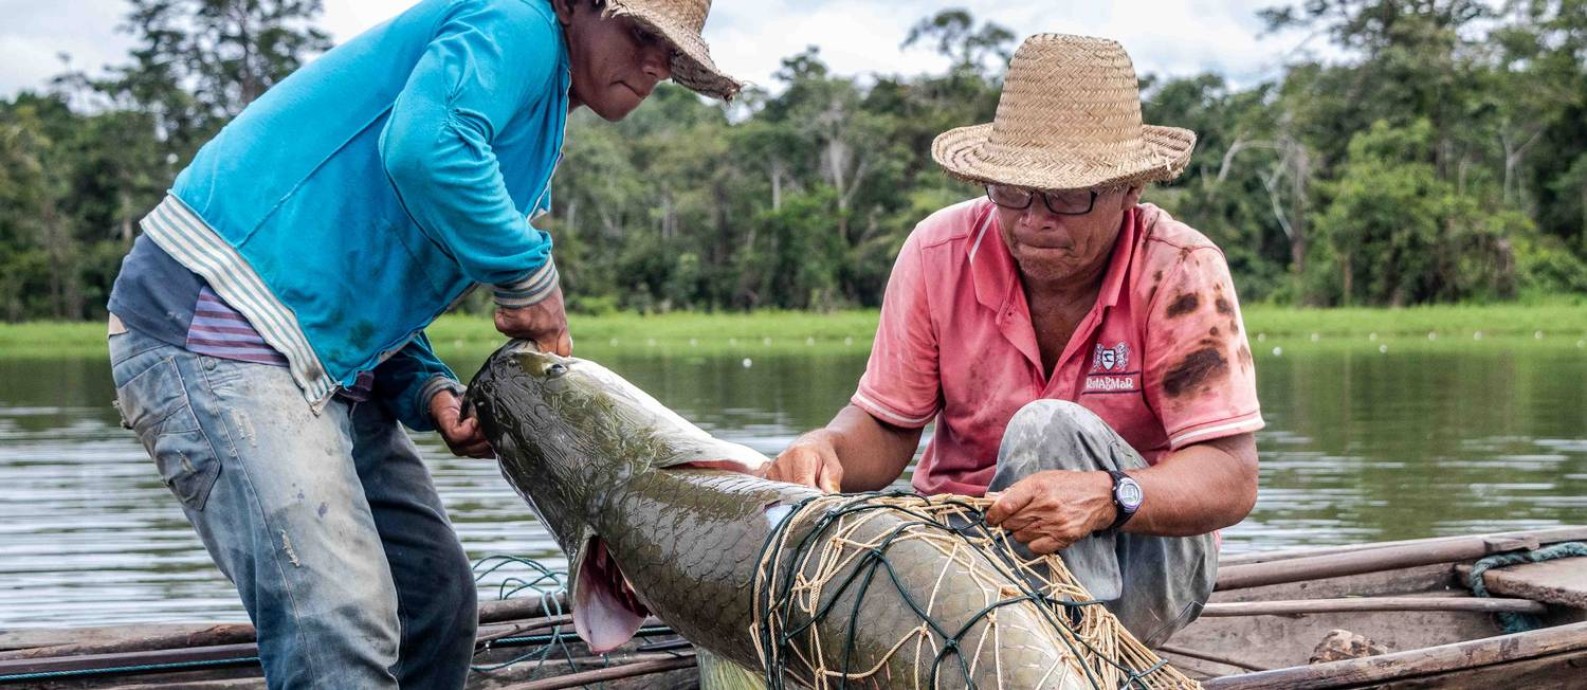 Pirarucu sendo pescado na Amazônia, dentro do trabalho de manejo Foto: Divulgação/Bernardo Oliveira